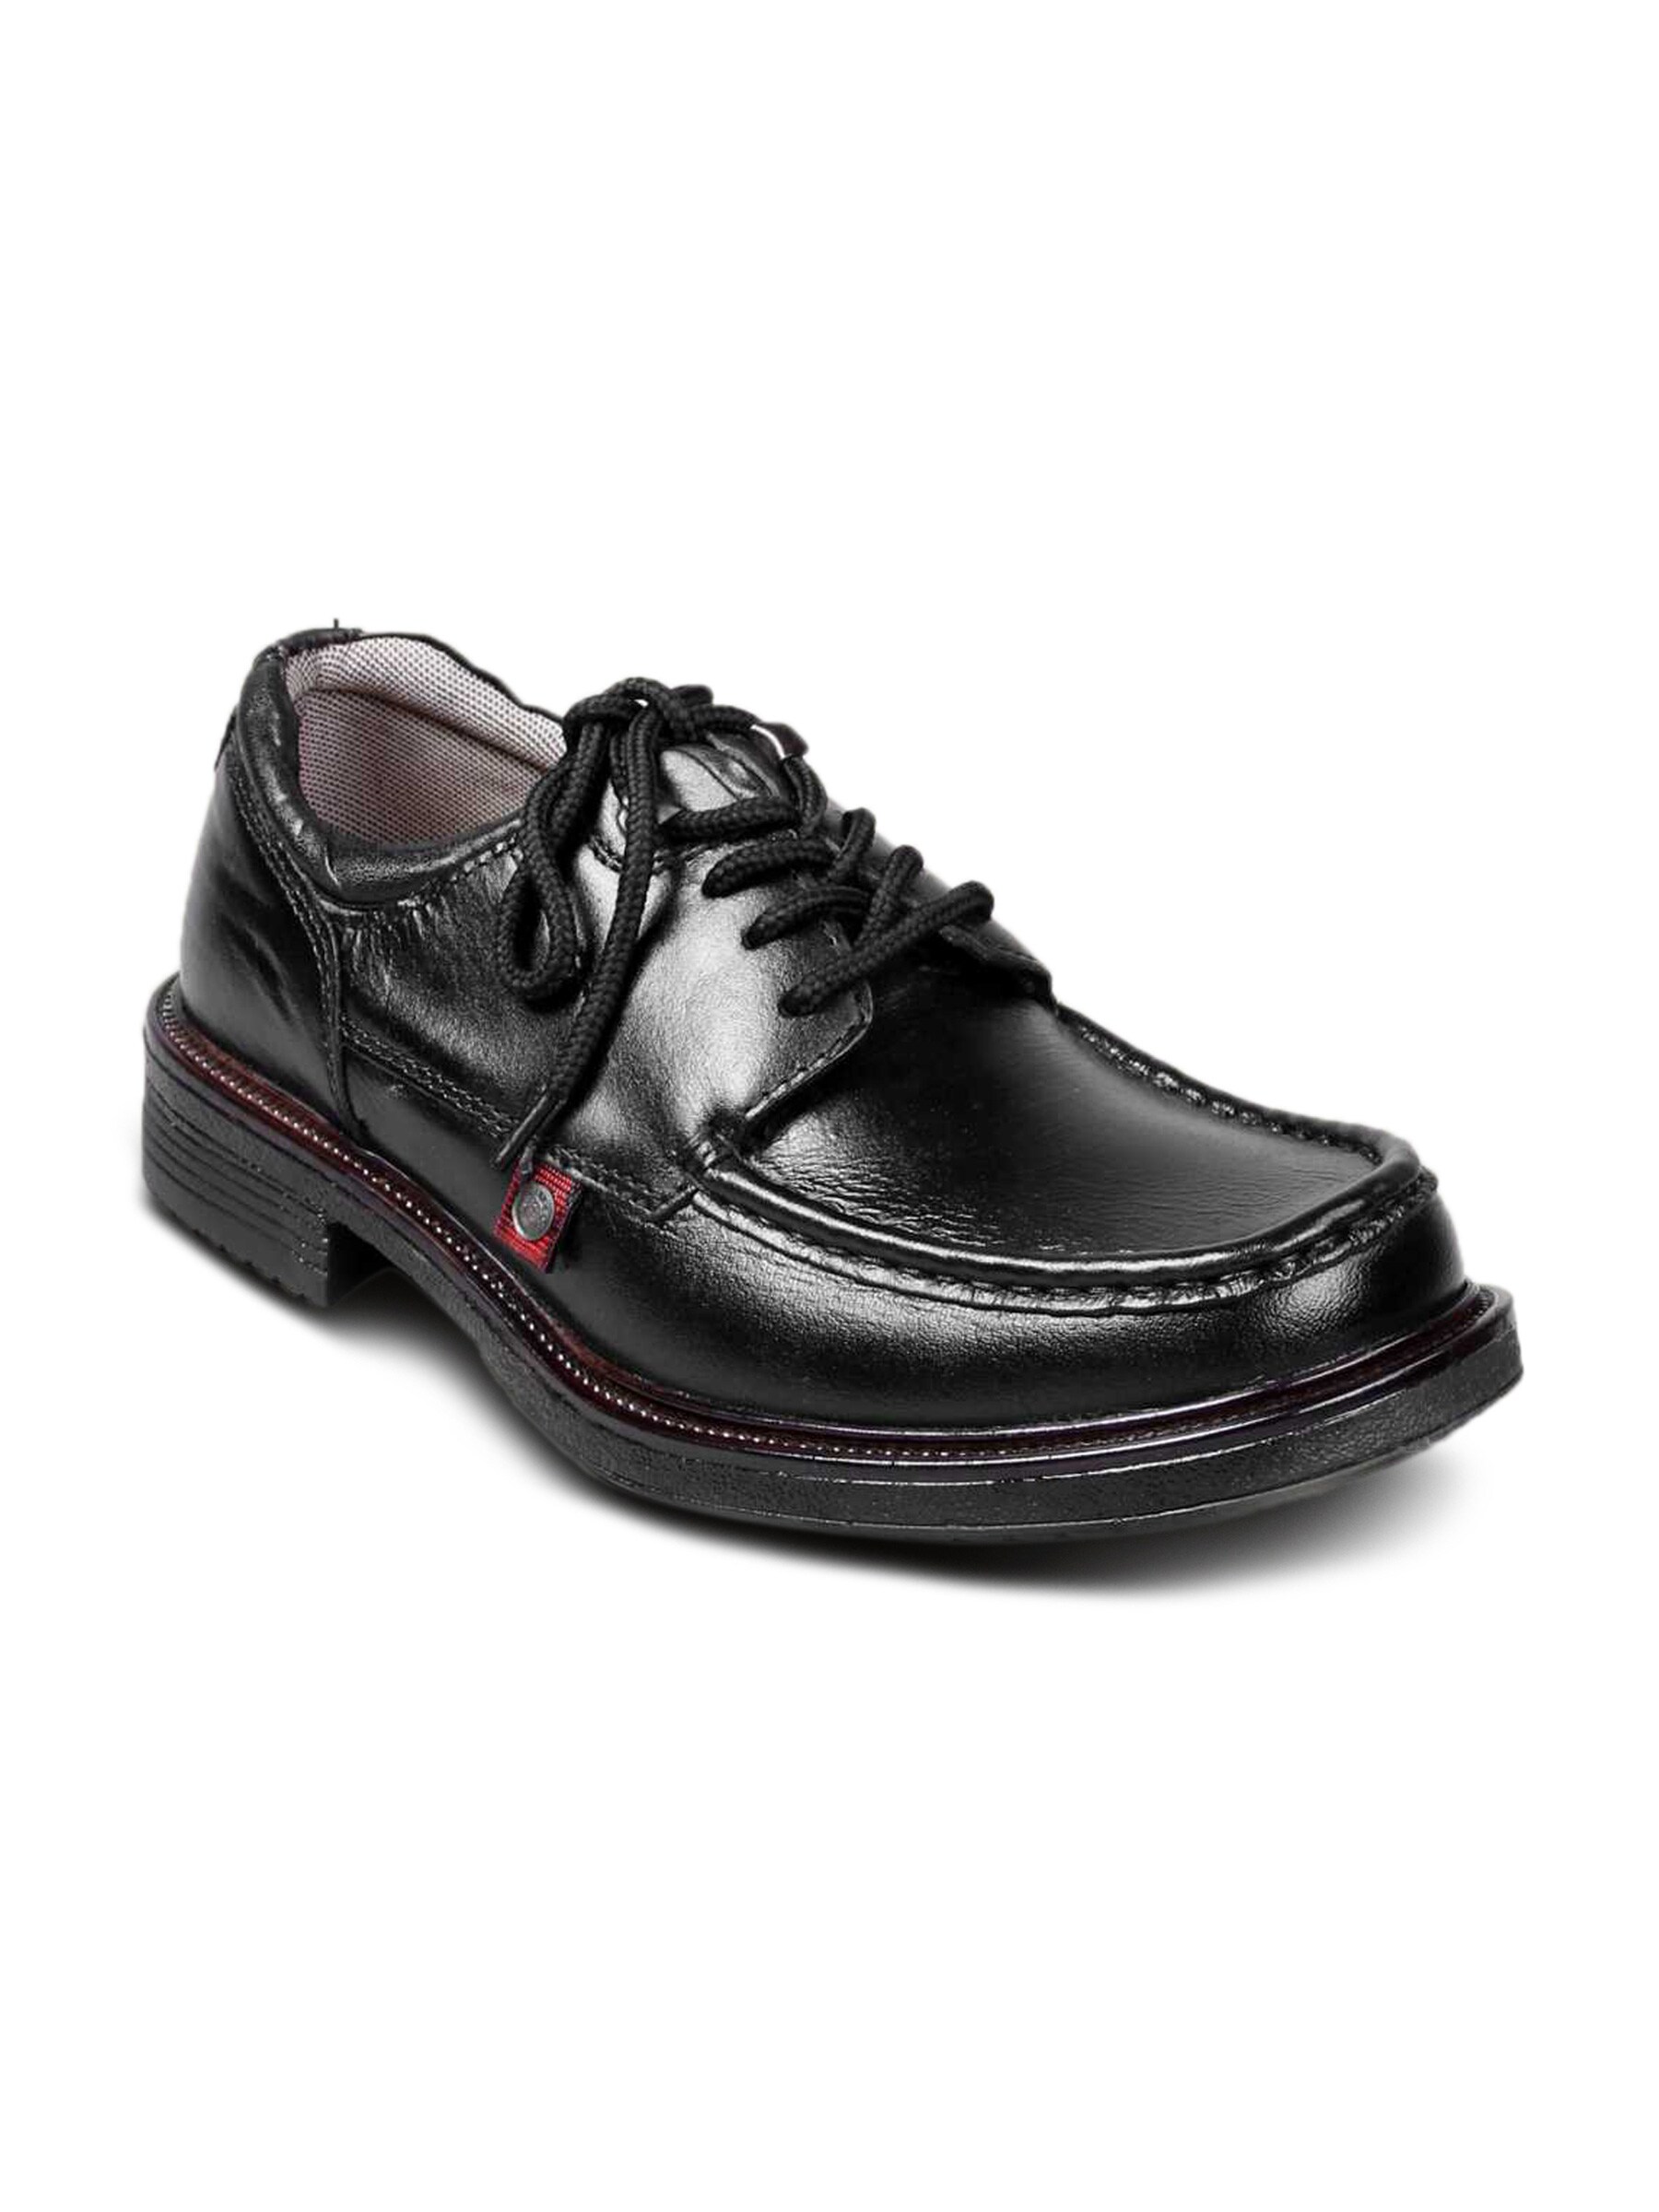 Lee Cooper Men Leather Semi Formal Black Shoe